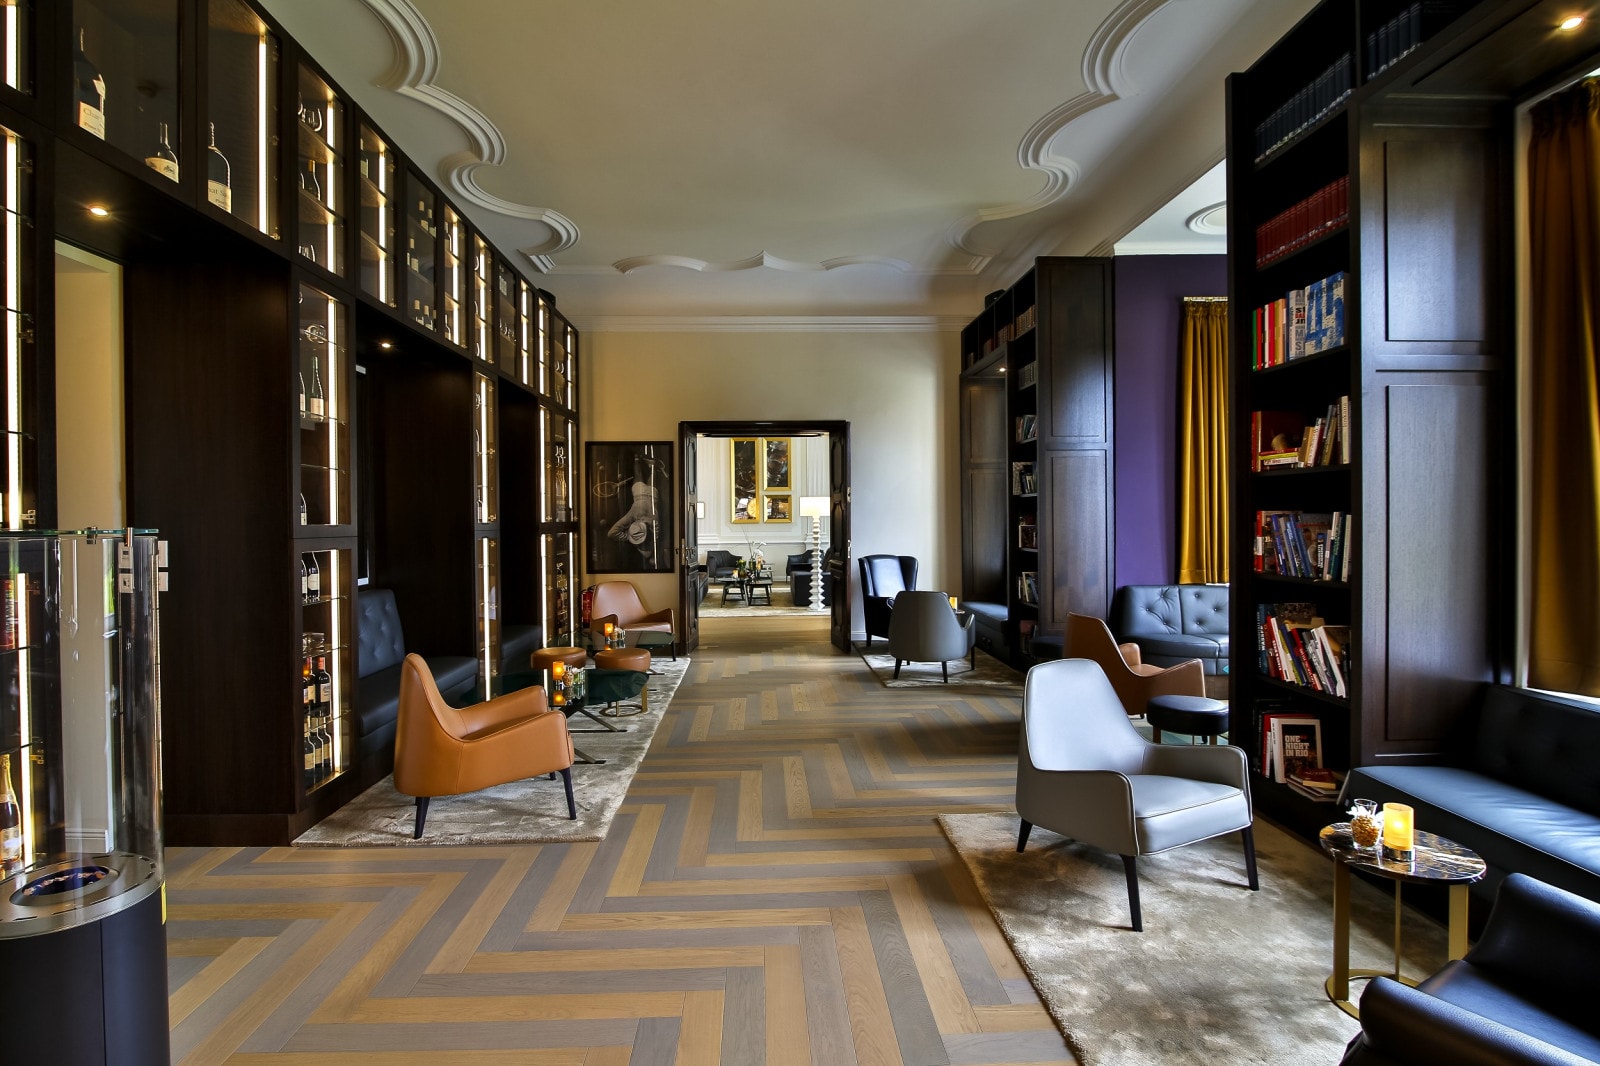 Die Wine and Book Lounge Area im Schlosshotel Fleesensee.